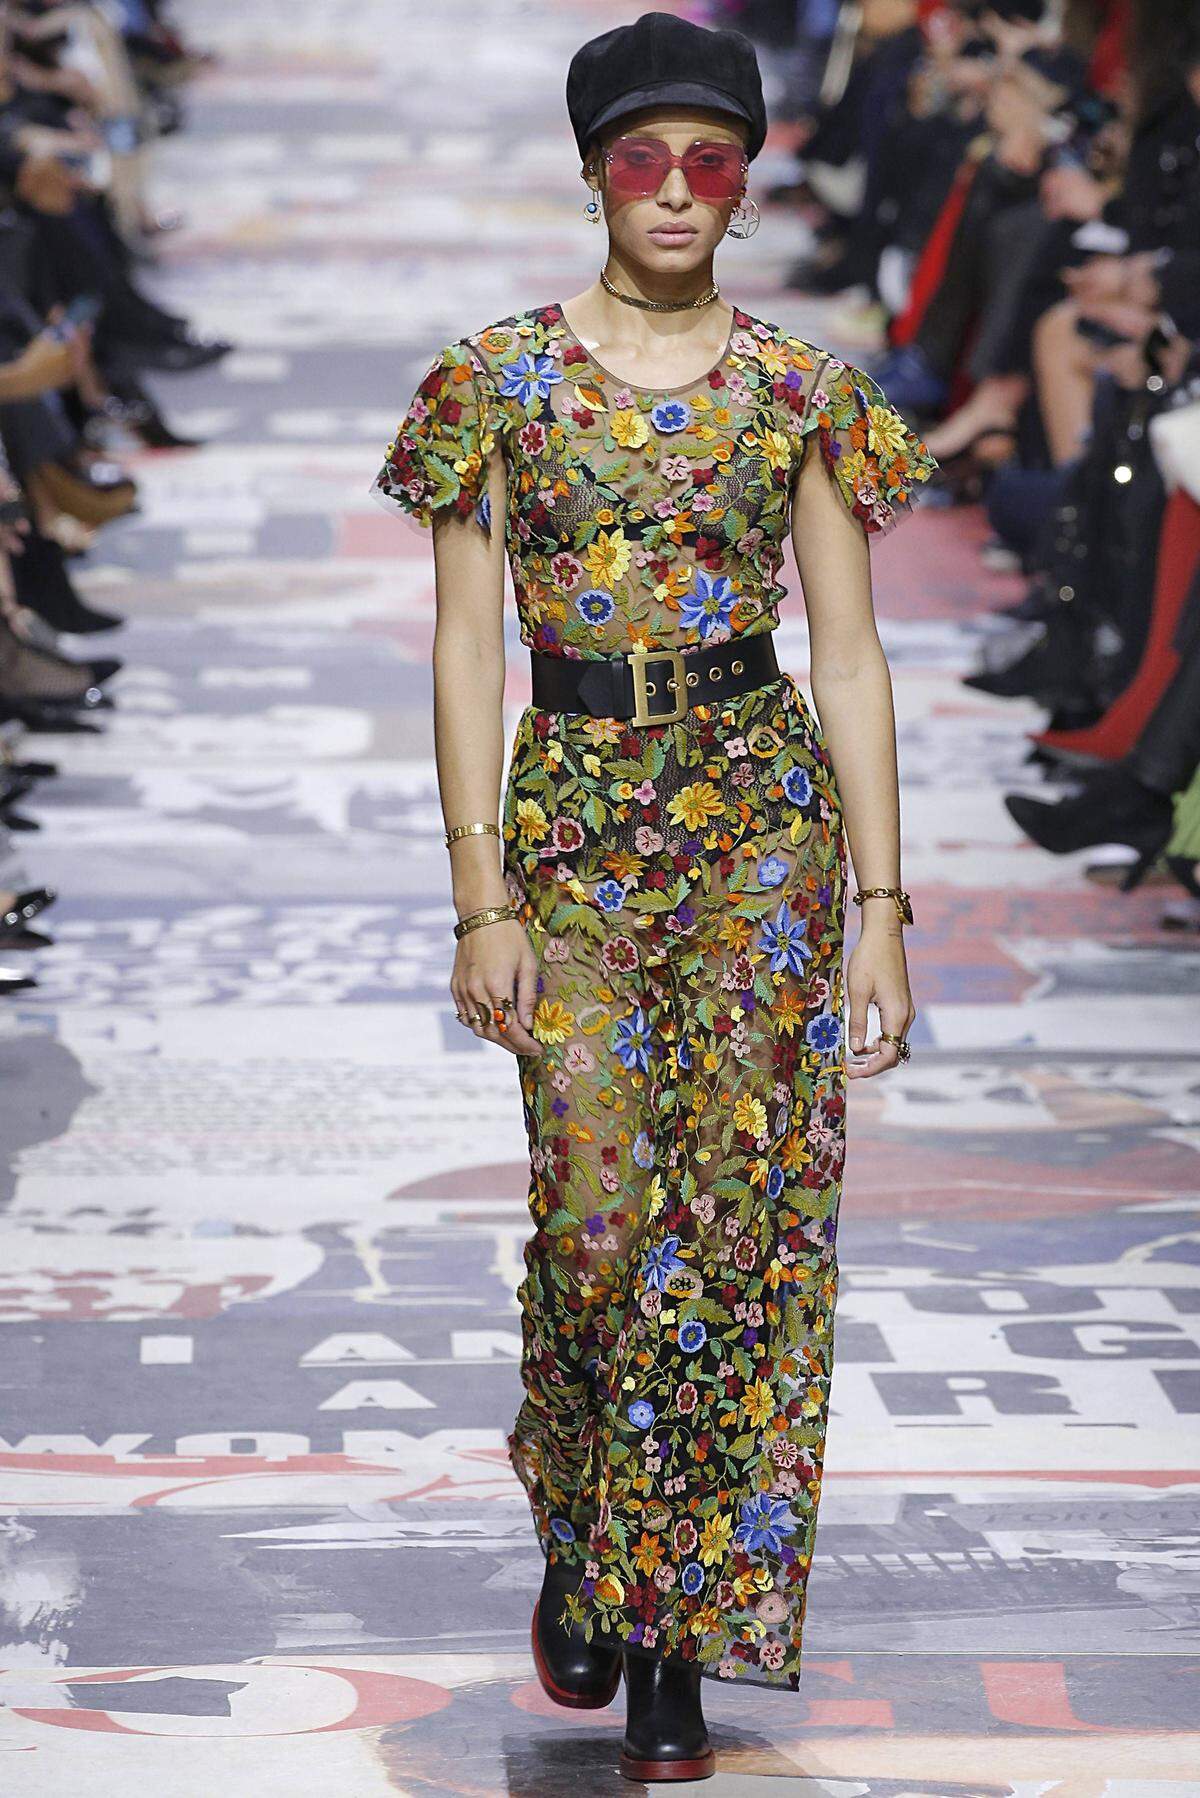 Als eine der wichtigsten Shows der Pariser Modewoche gilt das Defilee von Dior. Designerin Maria Grazia Chiuri konzentrierte sich auf die 68-Bewegung, die sich dieses Jahr zum 50. Mal jährt. Sie zeigte Neuinterpretationen der gängigen Looks der 60er- und 70er-Jahre, markige Sprüche wie "Support the mini skirt" waren in der Showlocation zu sehen.